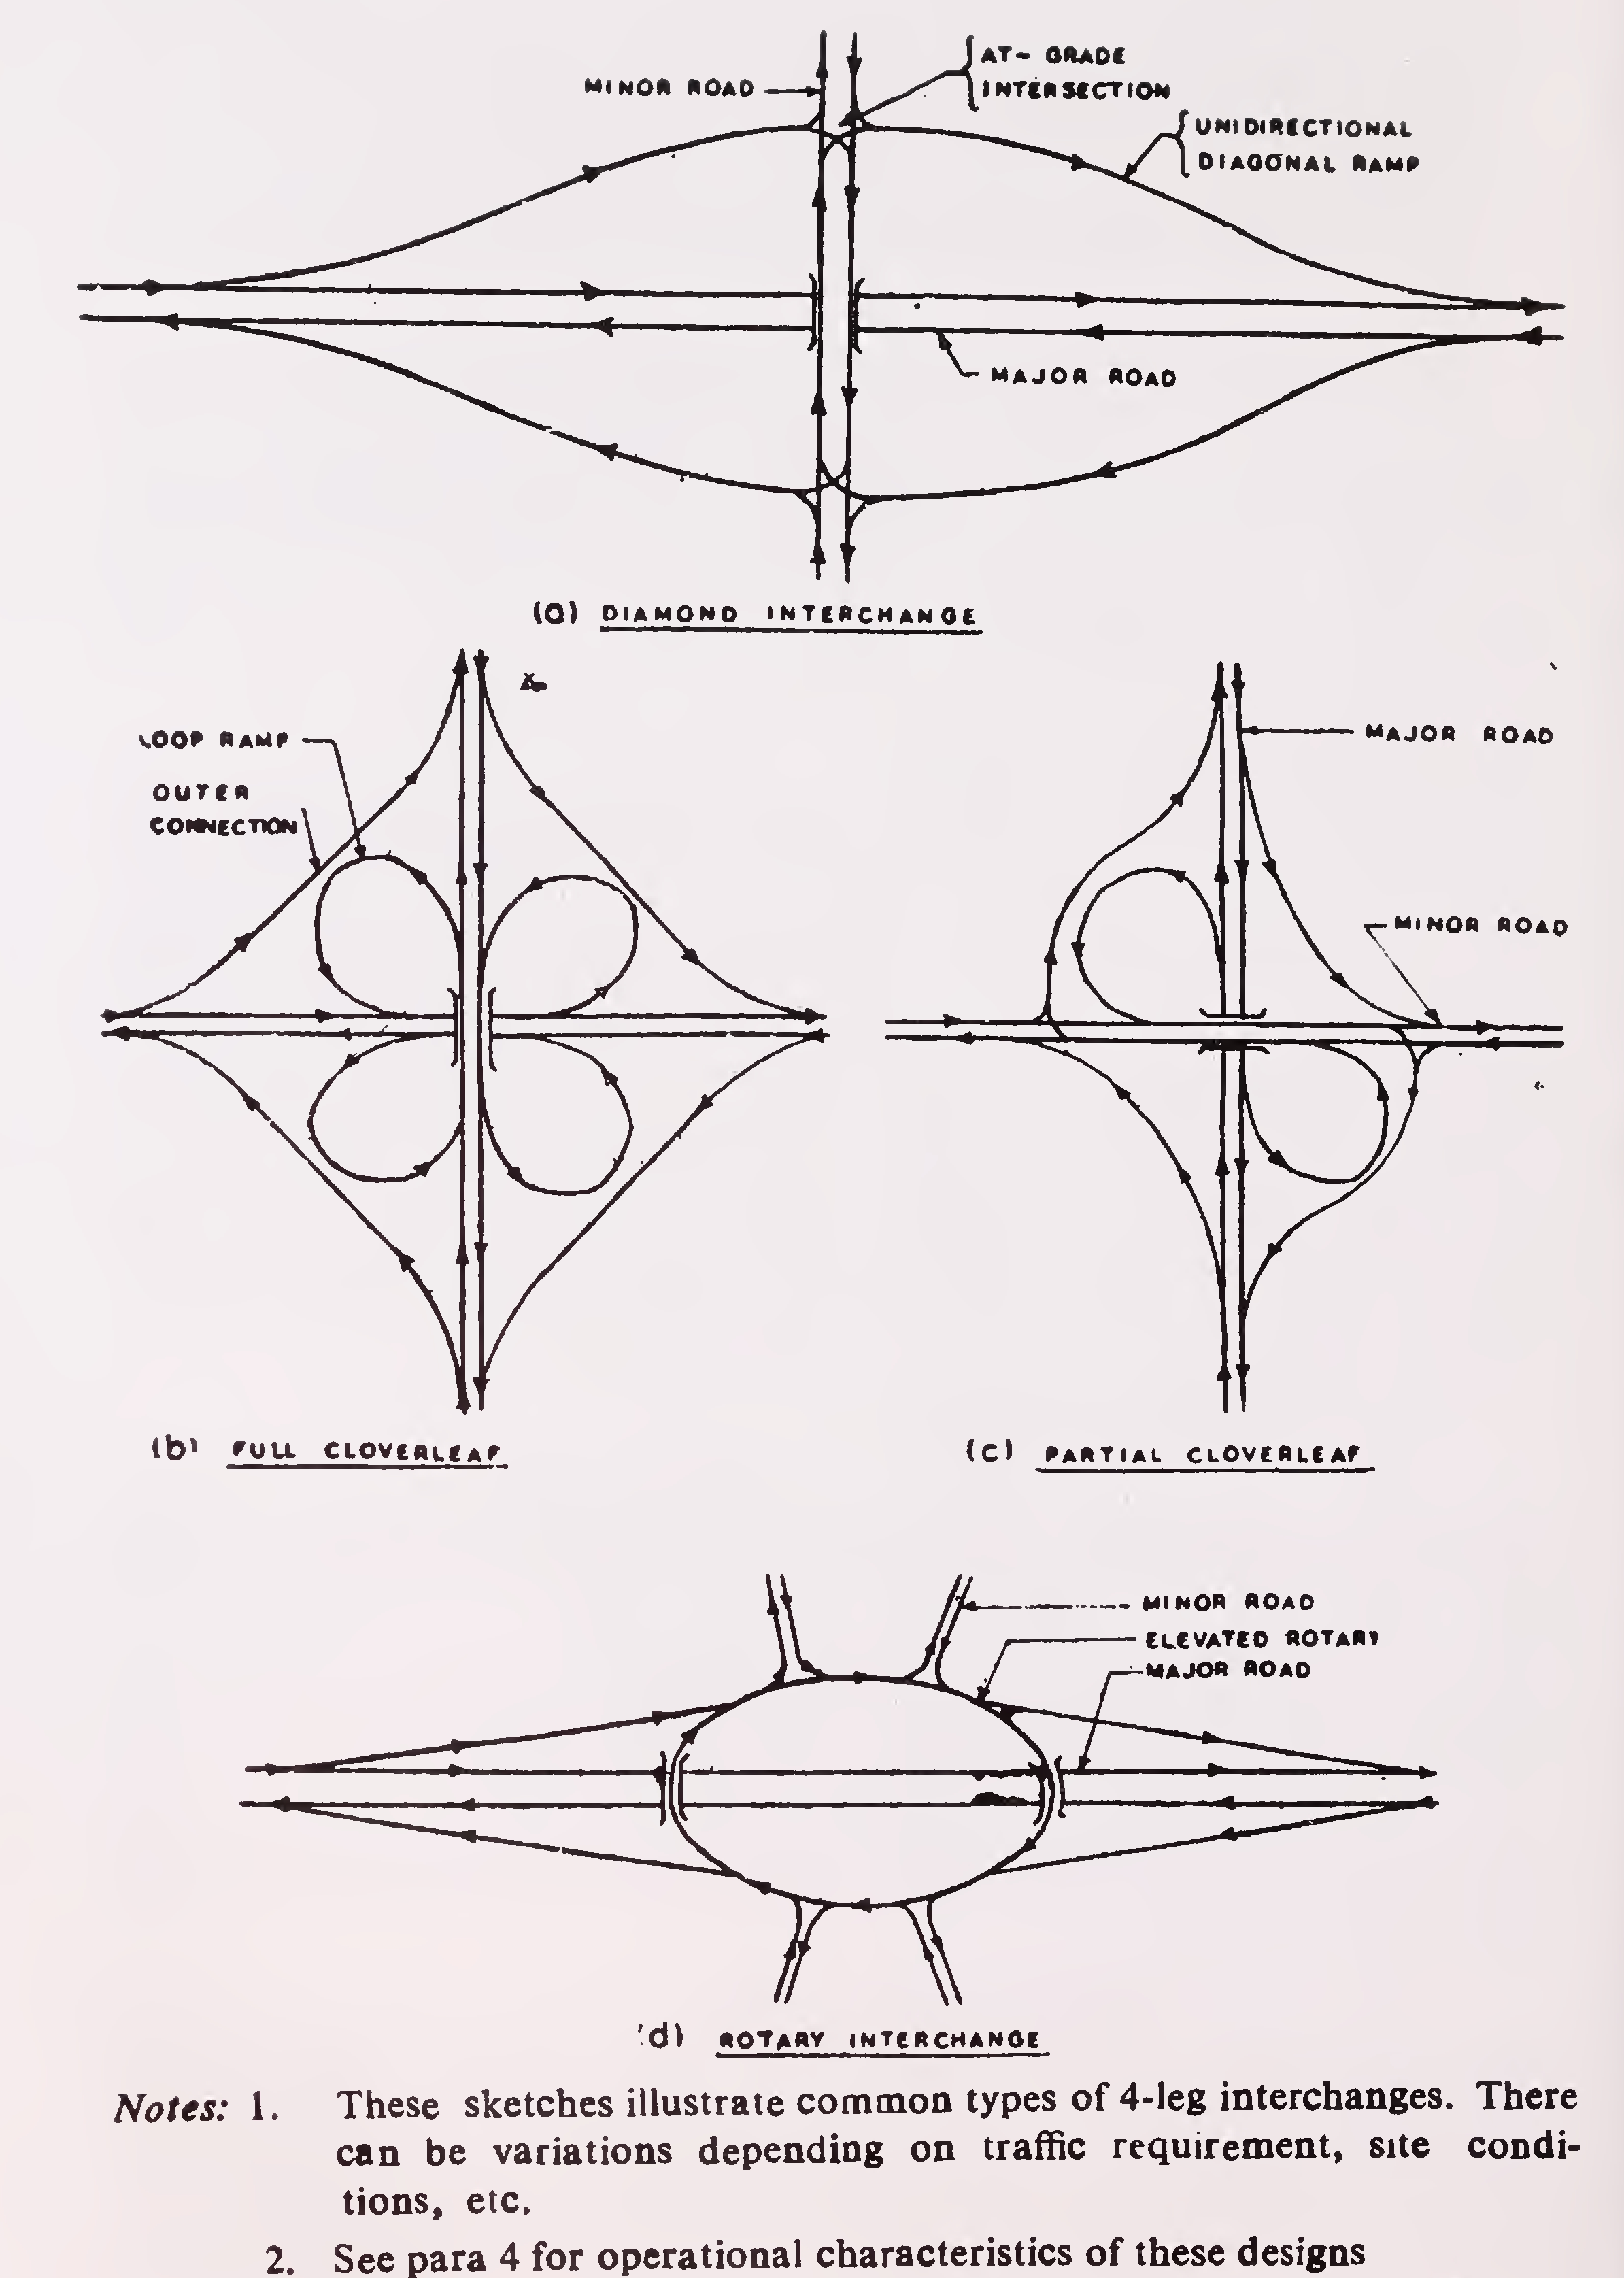 Fig. 2. Typical 4-leg interchange designs